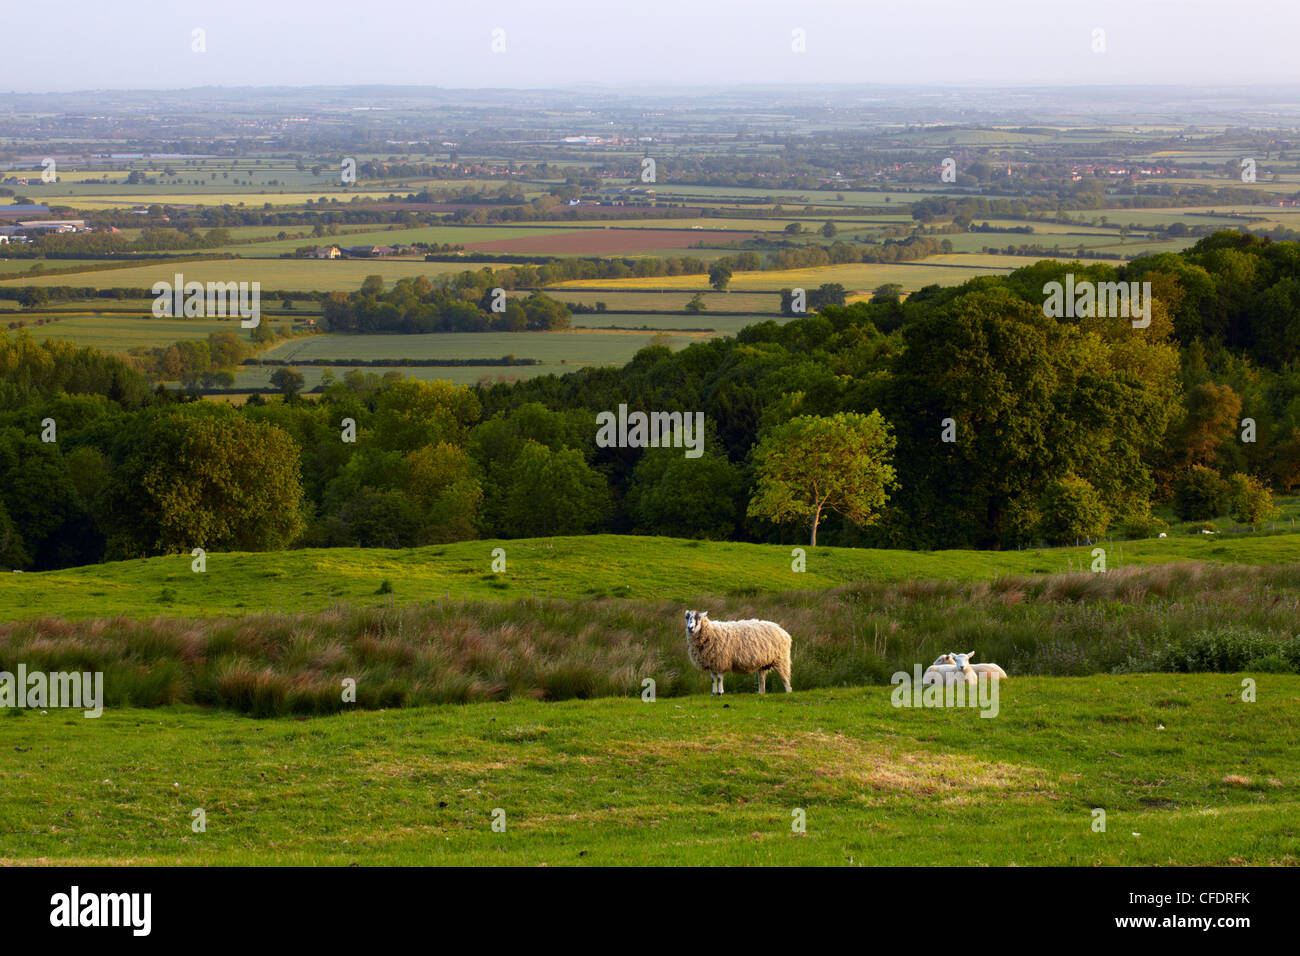 Einen Blick auf die Landschaft von Cotswold von Dovers Hügel in der Nähe von Chipping Camden, Gloucestershire, Cotswolds, England, UK Stockfoto